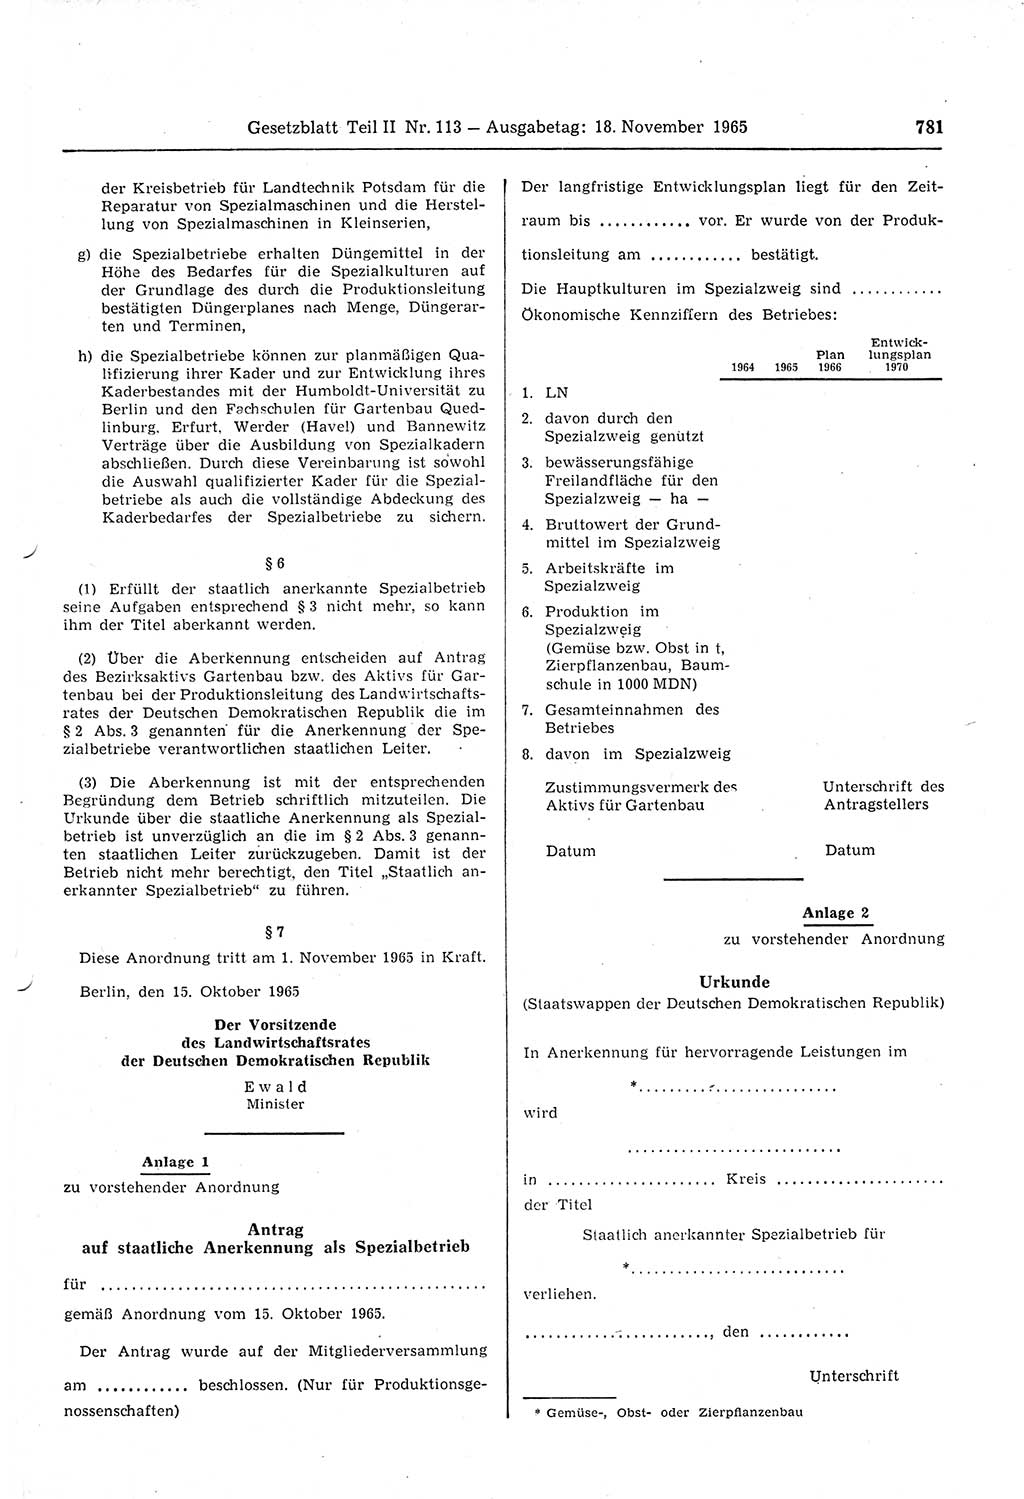 Gesetzblatt (GBl.) der Deutschen Demokratischen Republik (DDR) Teil ⅠⅠ 1965, Seite 781 (GBl. DDR ⅠⅠ 1965, S. 781)